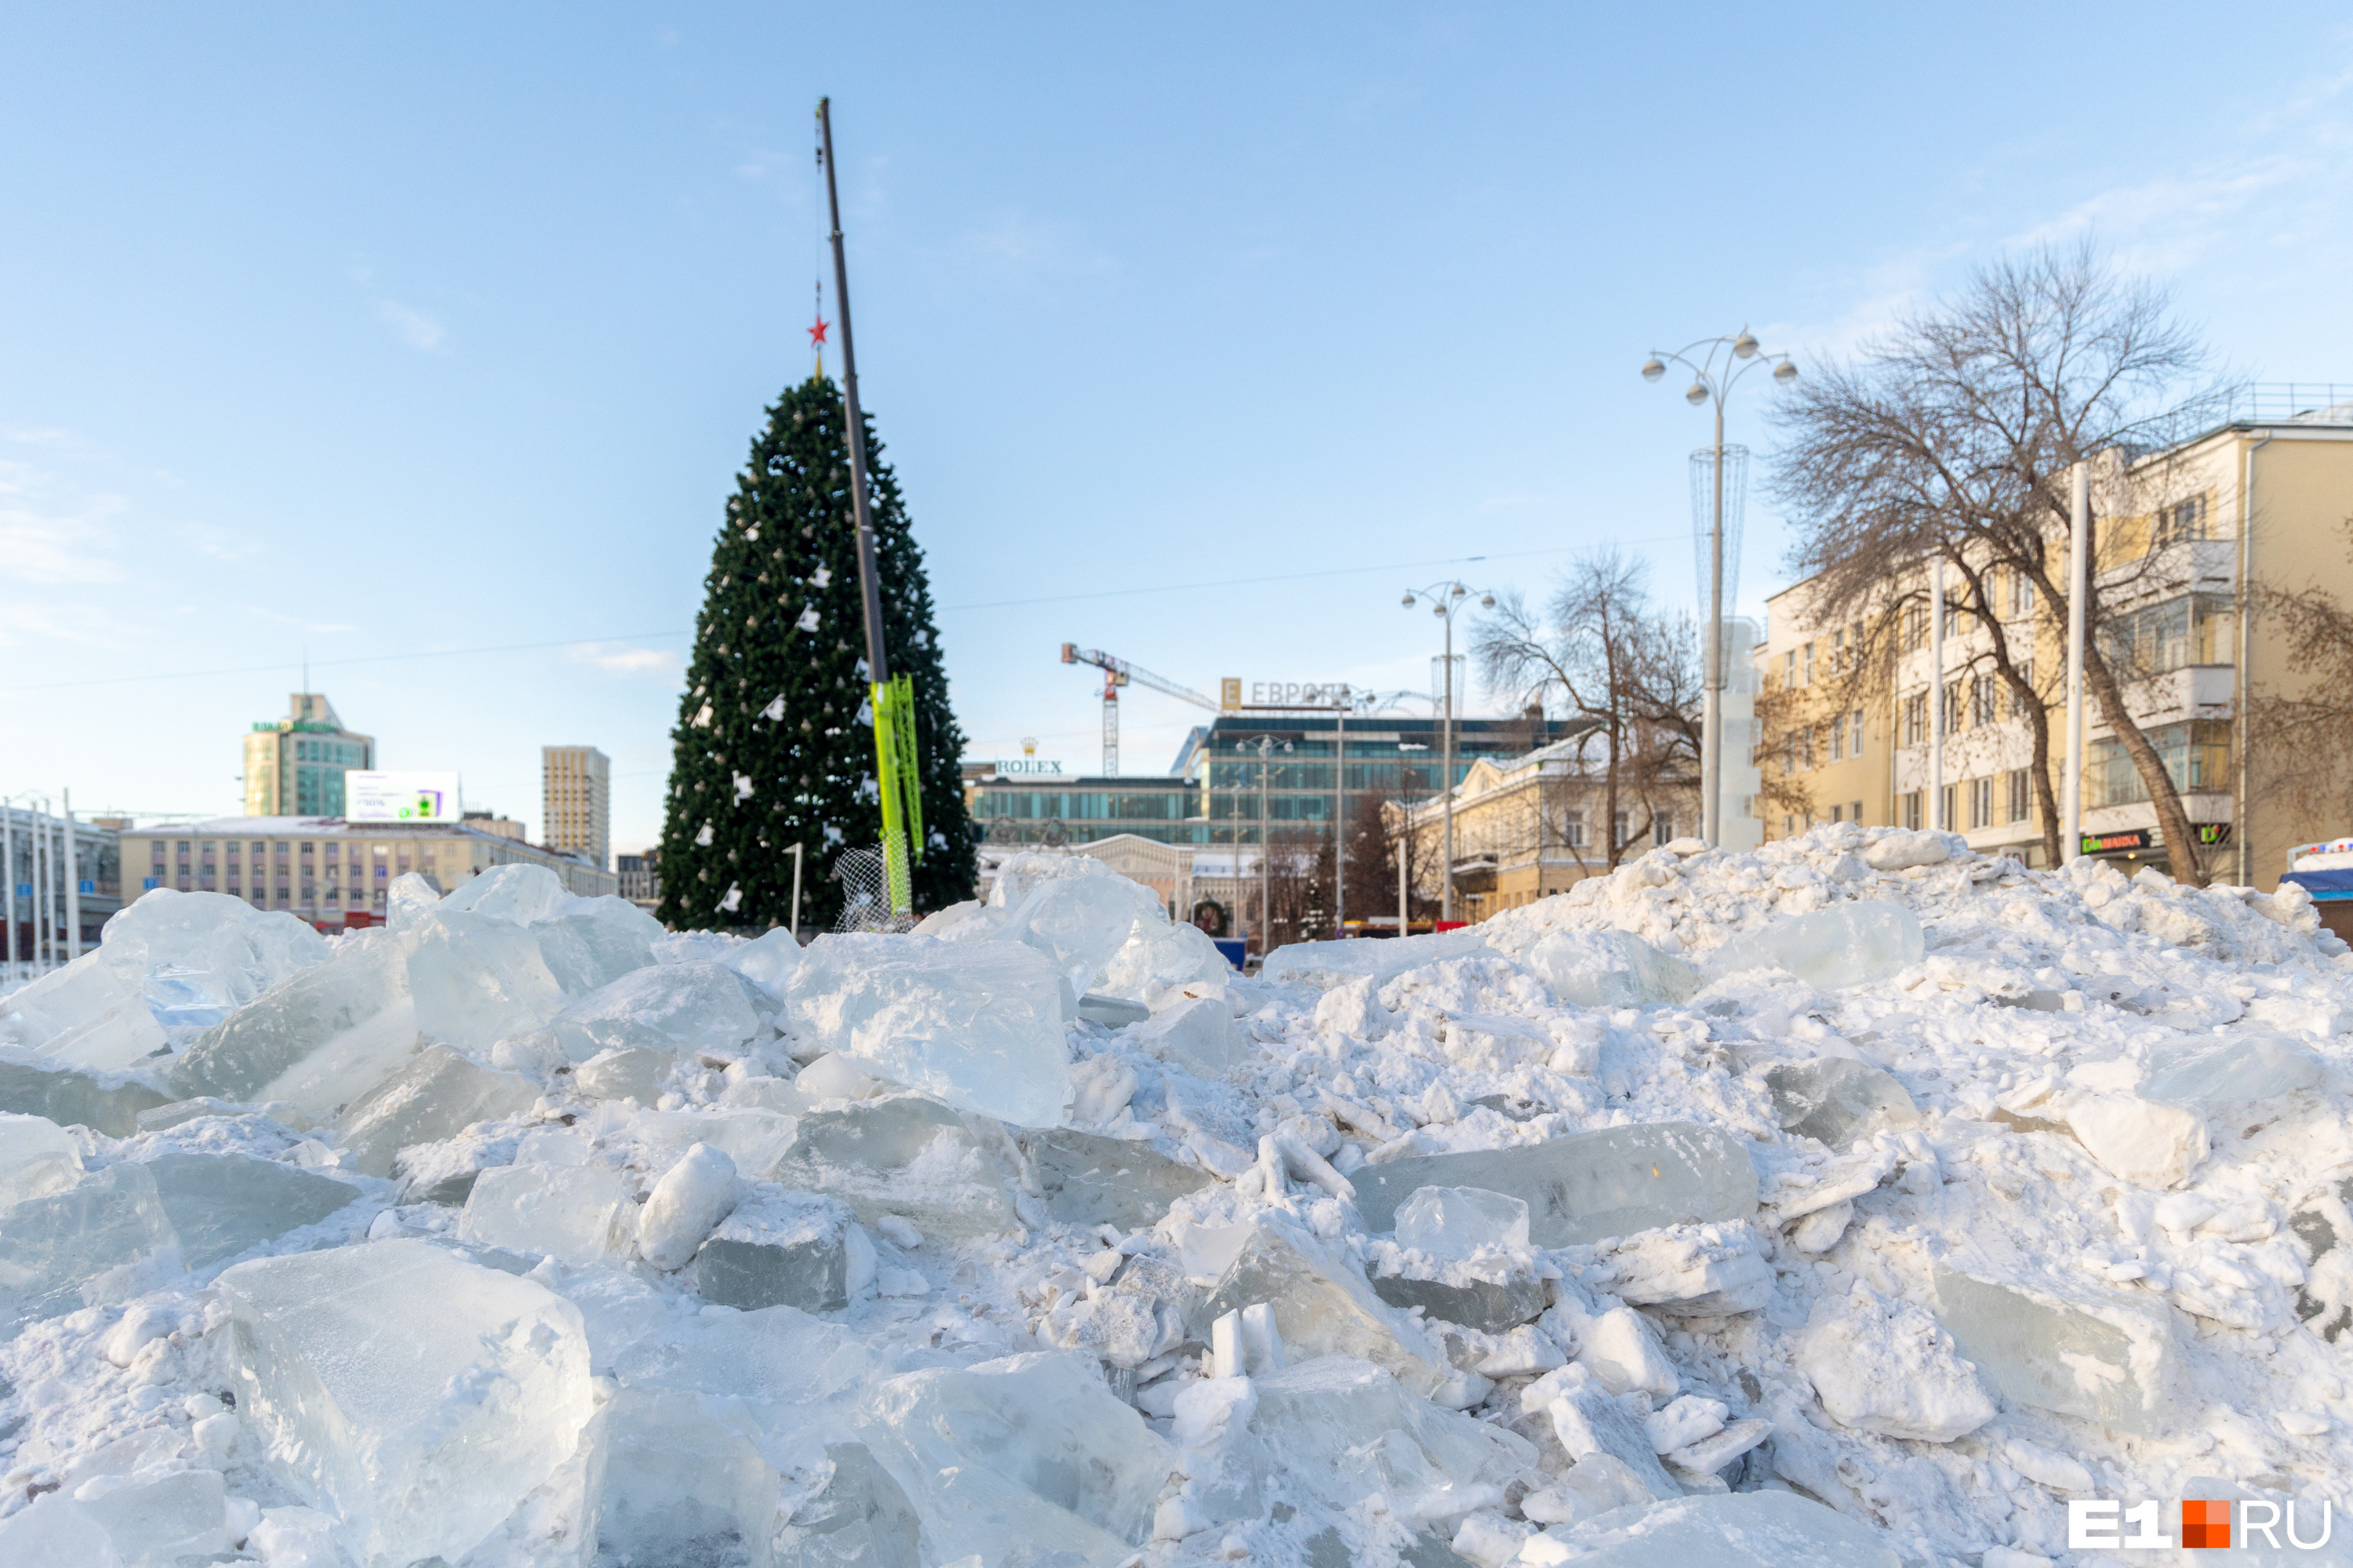 Никакого праздника! В Екатеринбурге снесли главный ледовый городок за 24 миллиона